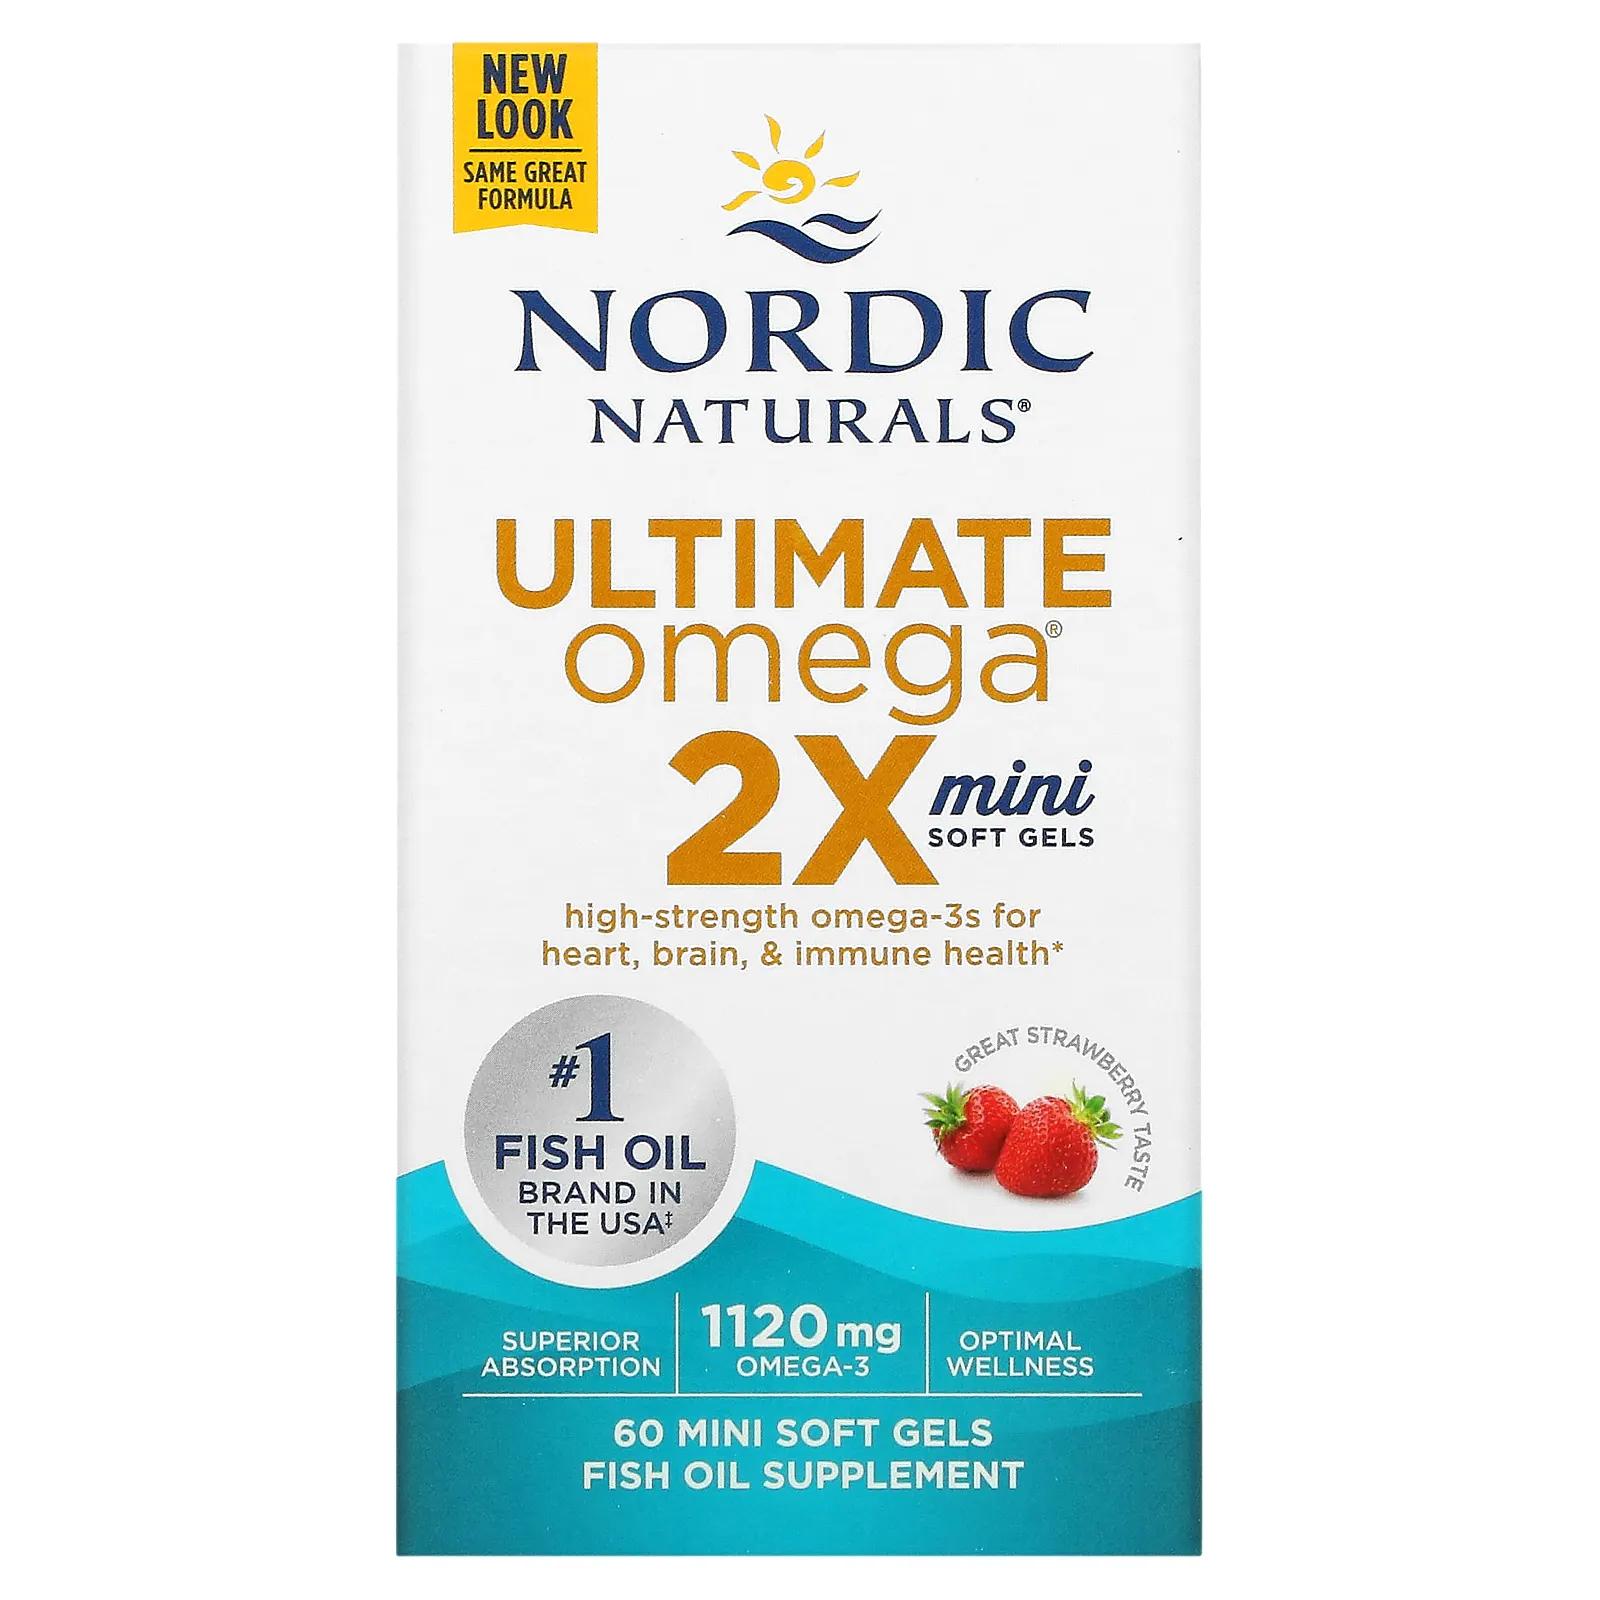 Nordic Naturals Ultimate Omega 2X вкус клубники 1120 мг 60 мини-капсул nordic naturals ultimate omega 2x с витамином d3 вкус лимона 60 мягких капсул